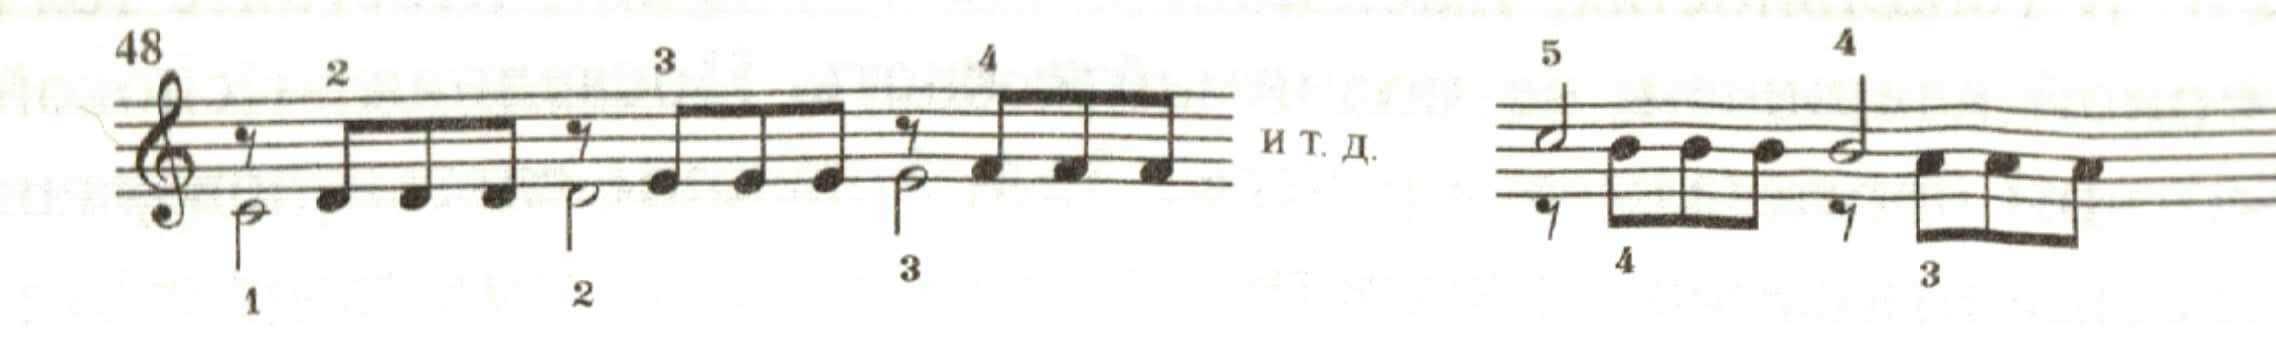 Откртый урок по спецальности Фортепиано на тему Подготовка ученика-пианиста к правильному исполнению гамм